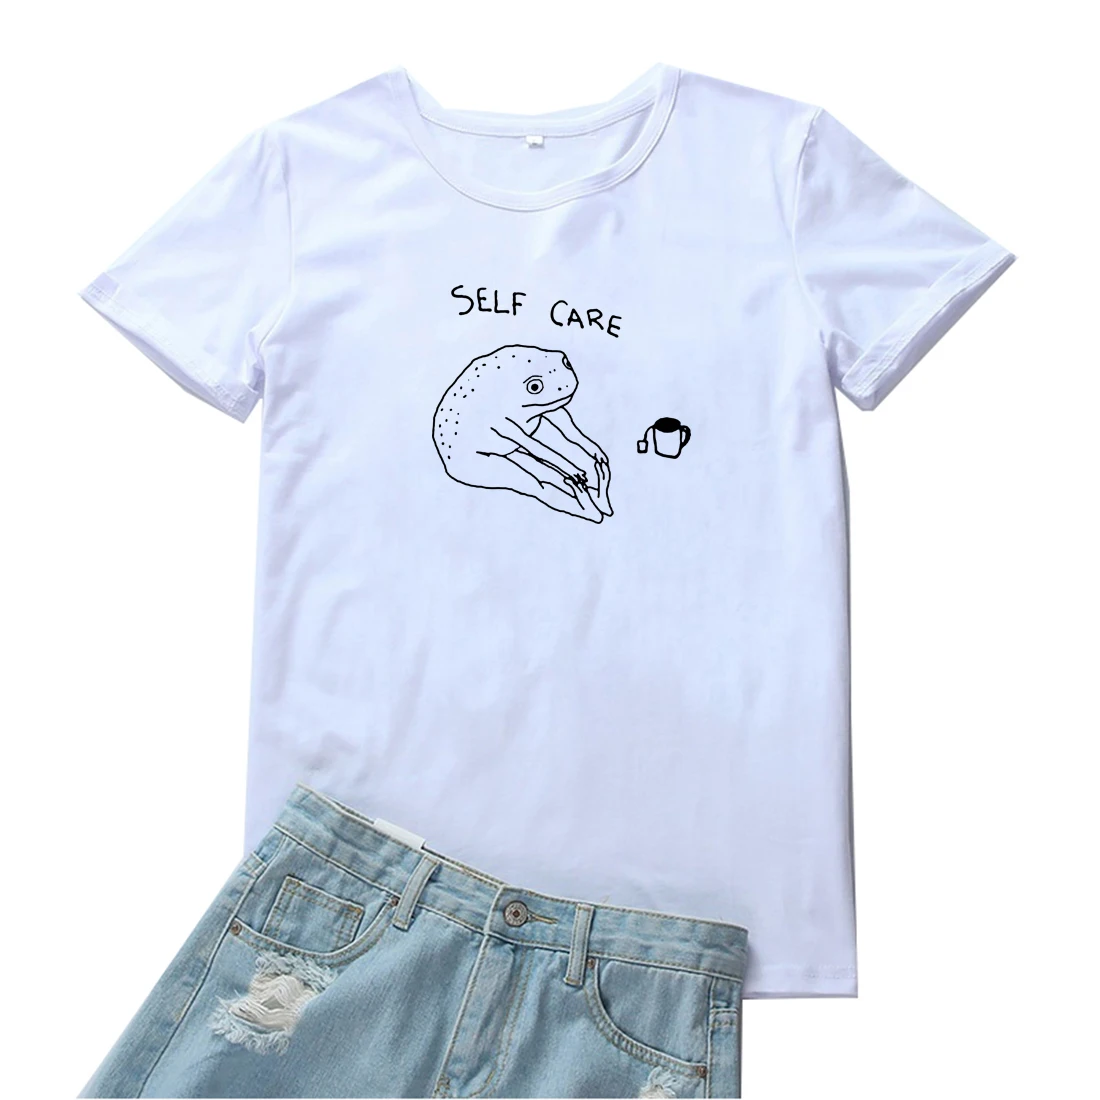 Женские футболки для самостоятельного ухода индивидуальные с рисунком лягушки